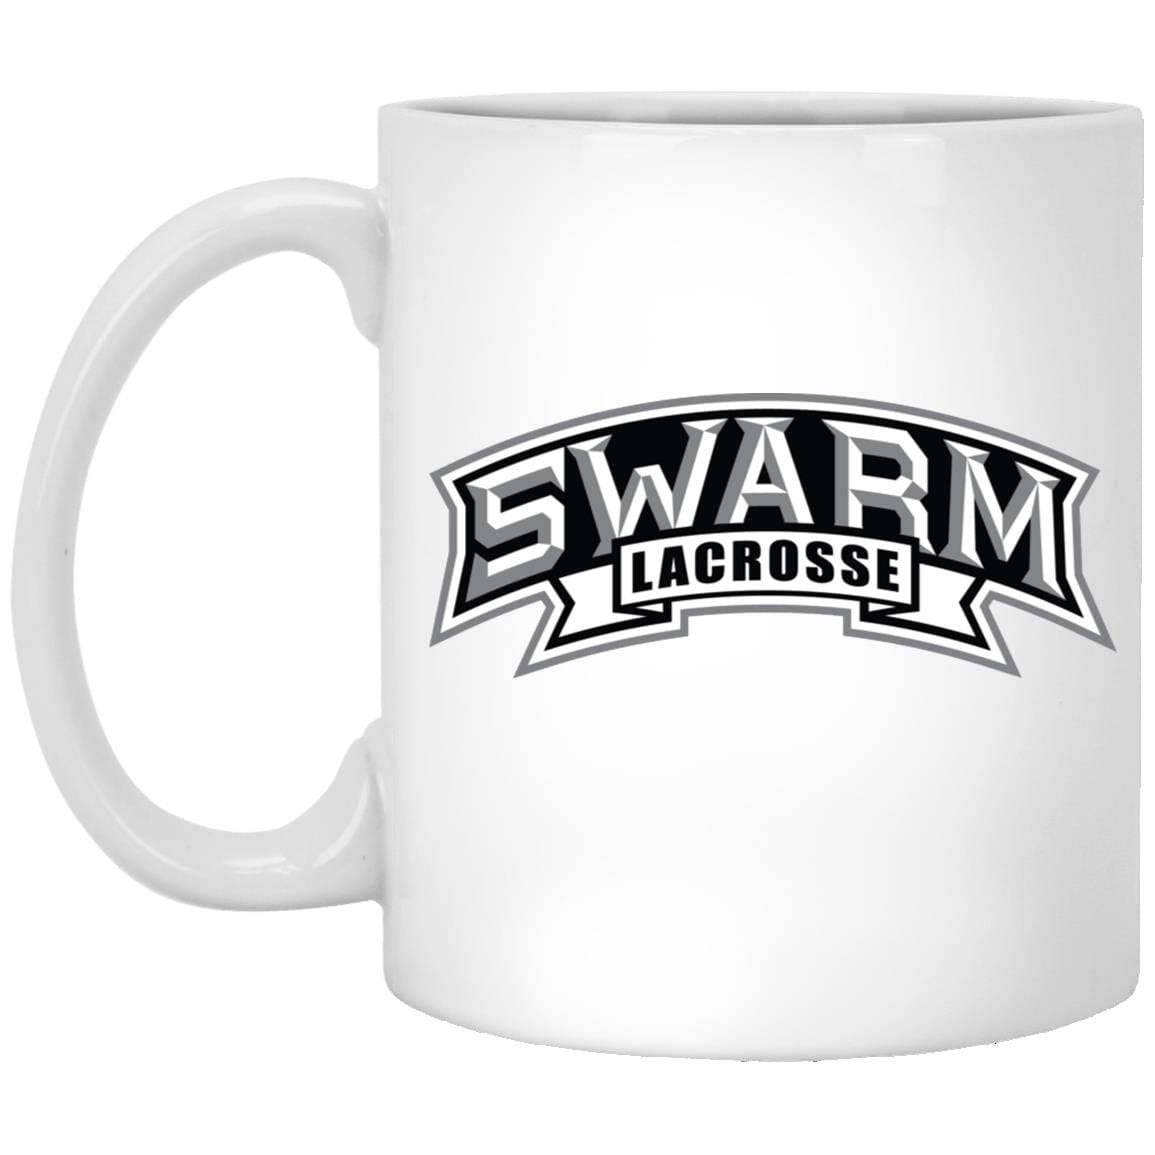 Swarm Lacrosse Coffee Mug Signature Lacrosse